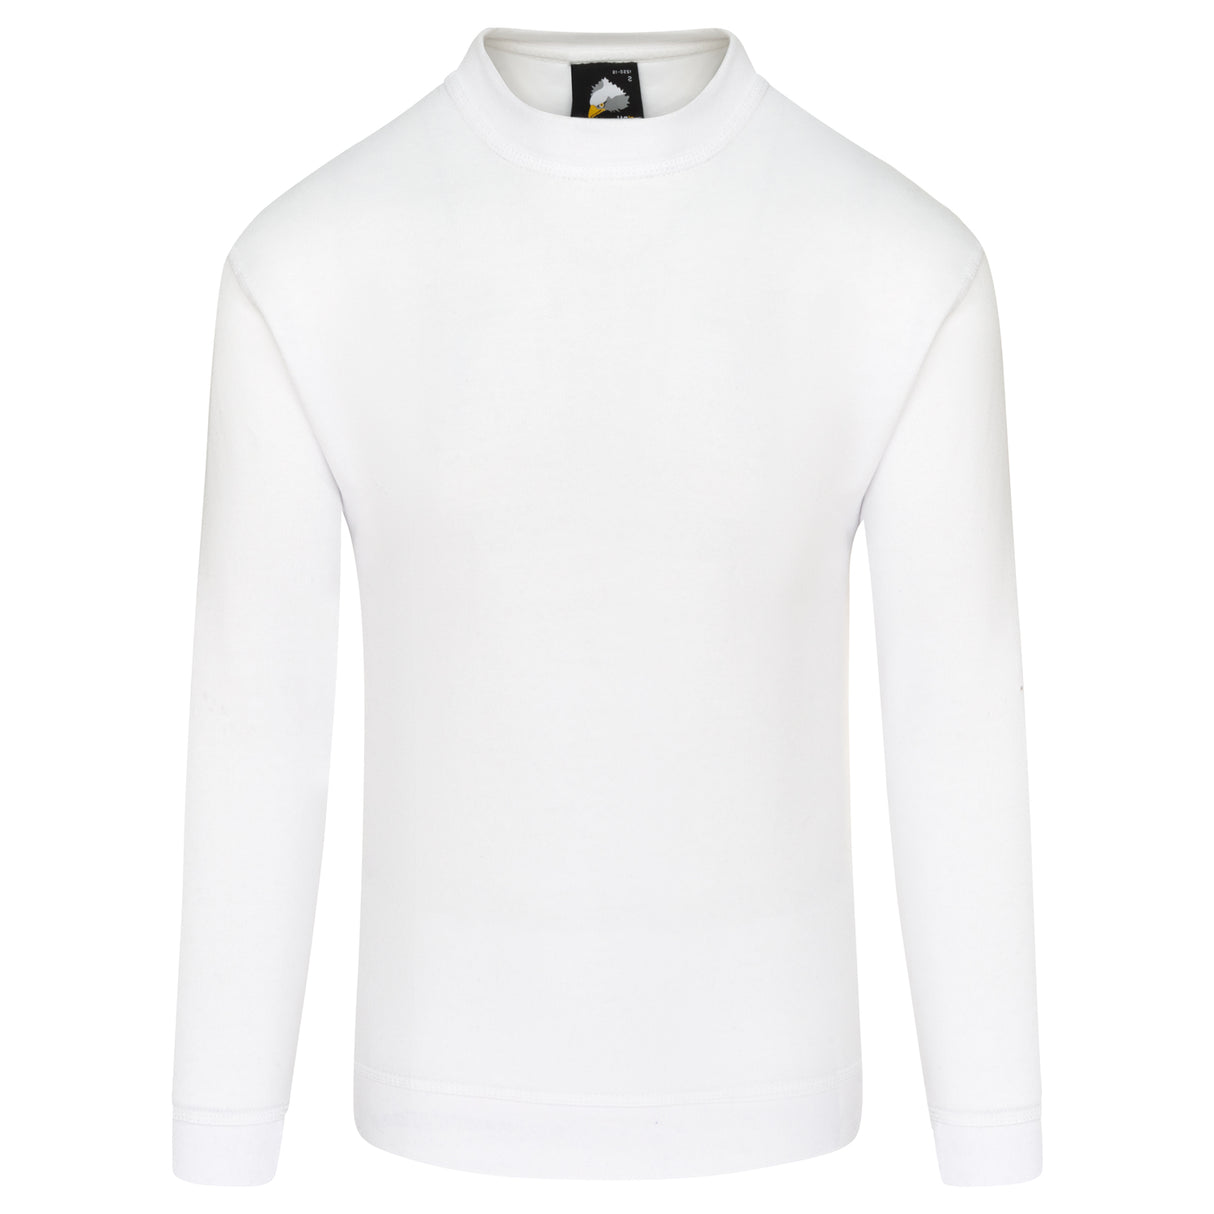 ORN 1250 - Kite Premium Sweatshirt White